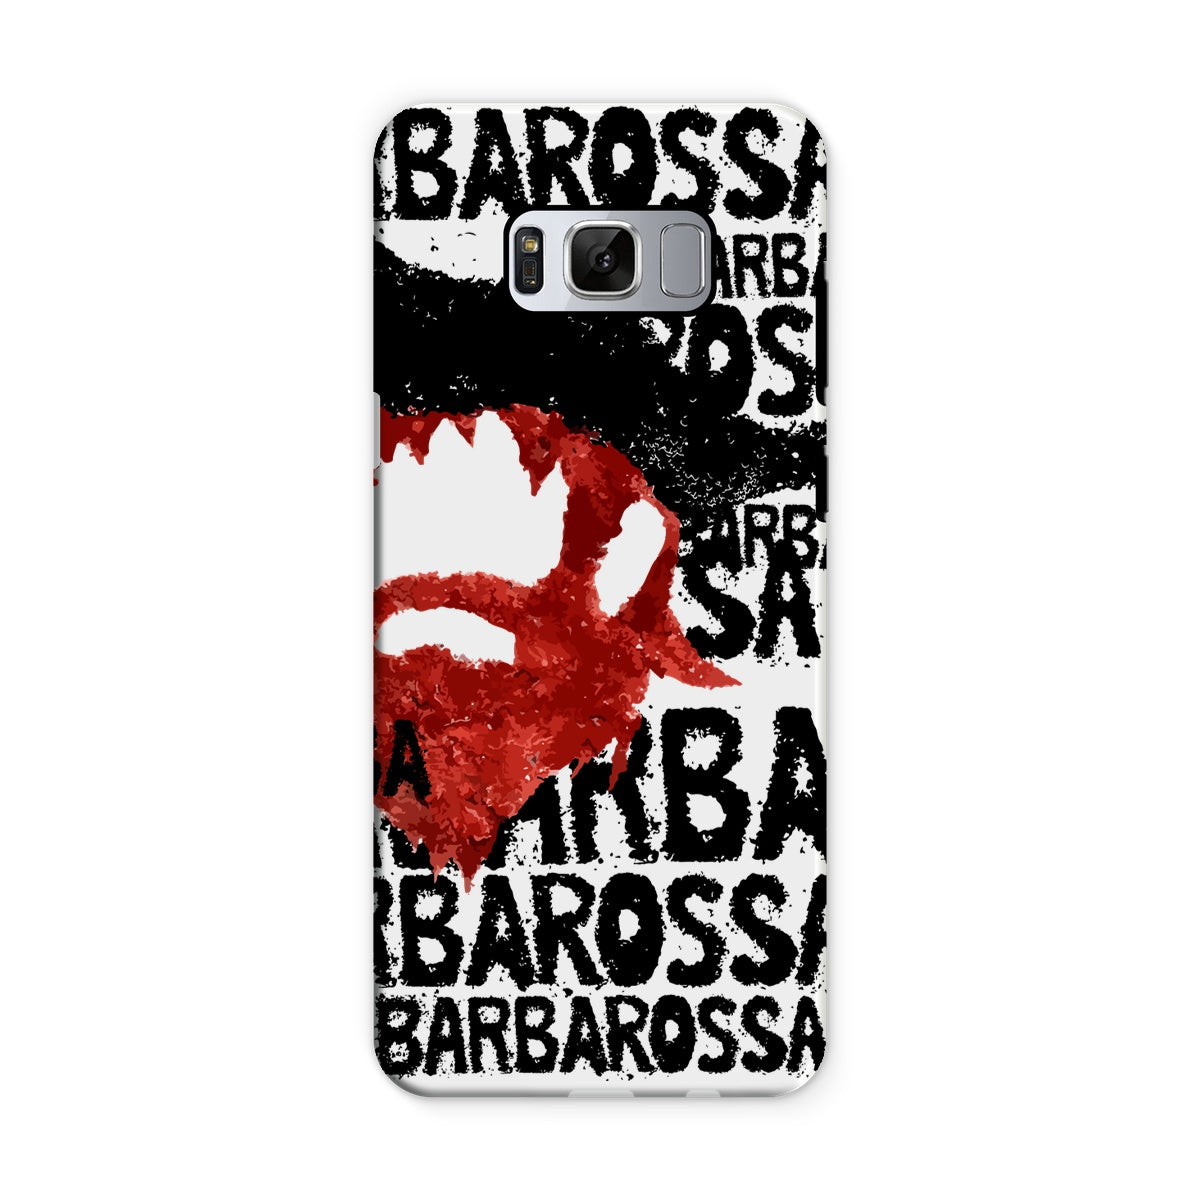 AQUA HMP2 - 01 - Barbarossa - Capa de telefone resistente